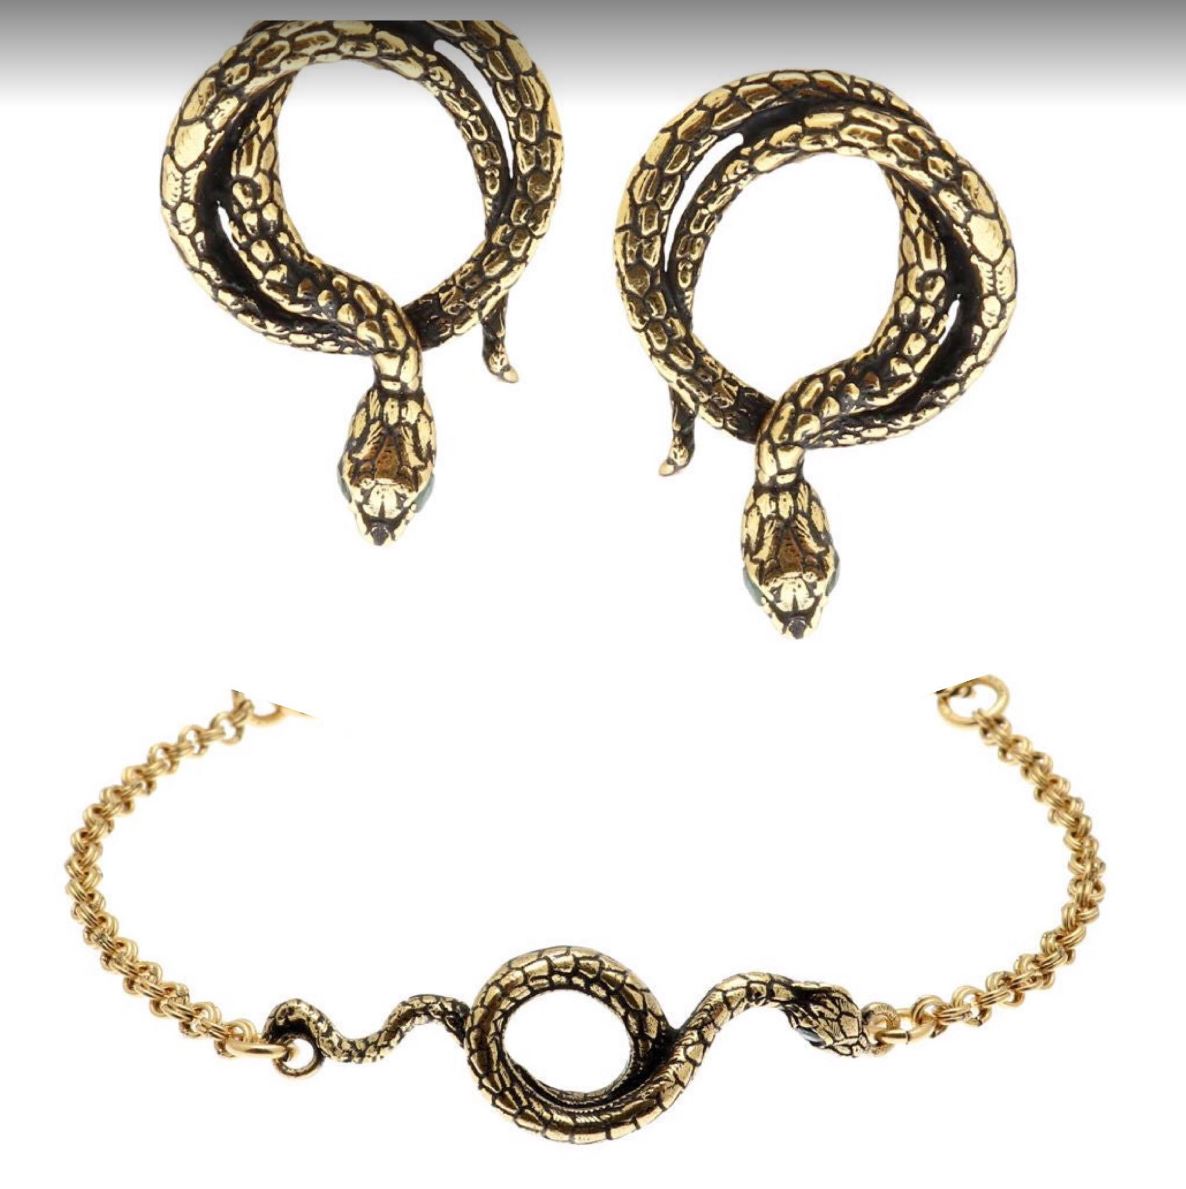 Alcozer Snake Jewelry Set / Golden Brass, Emeralds / Italian Jewelry-1